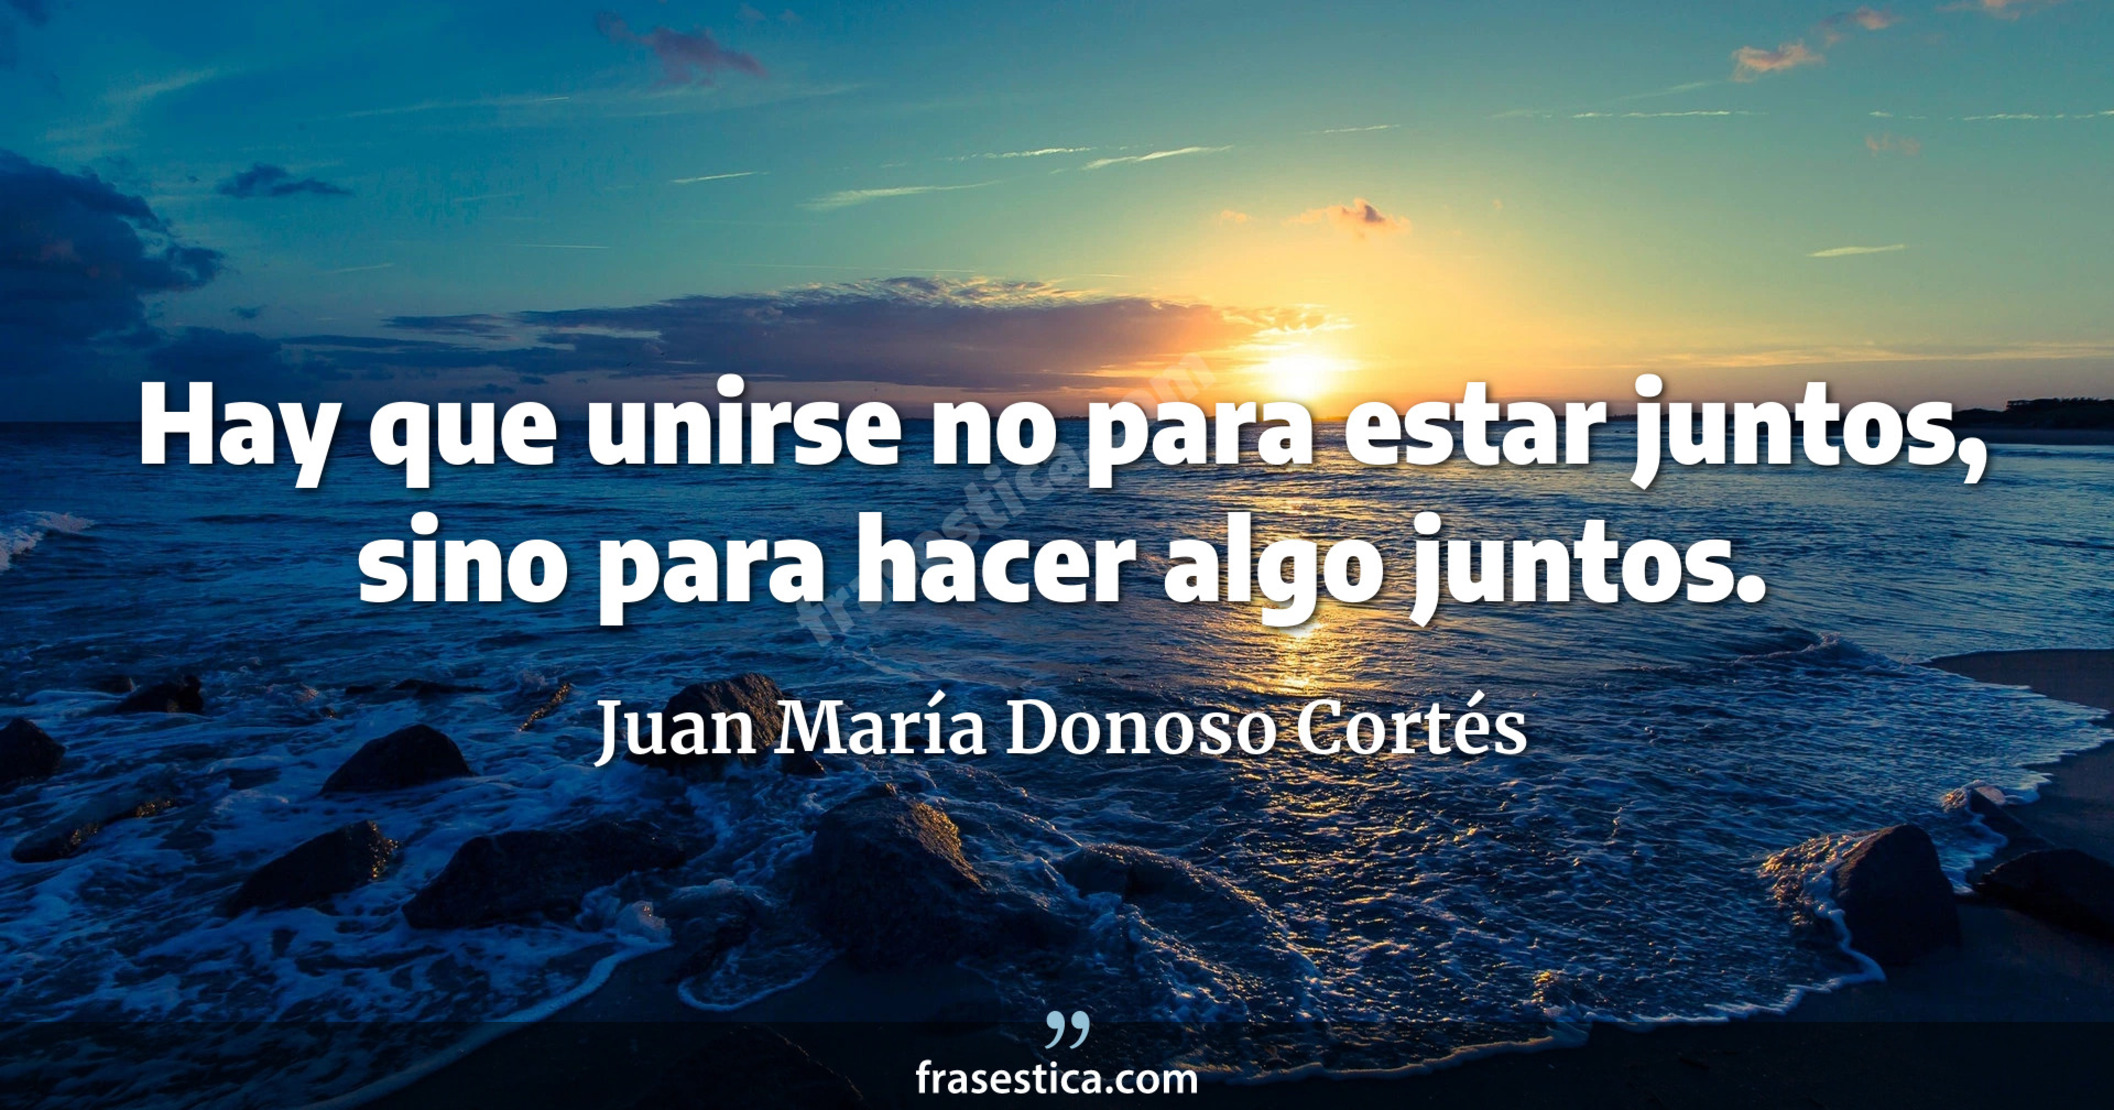 Hay que unirse no para estar juntos, sino para hacer algo juntos. - Juan María Donoso Cortés